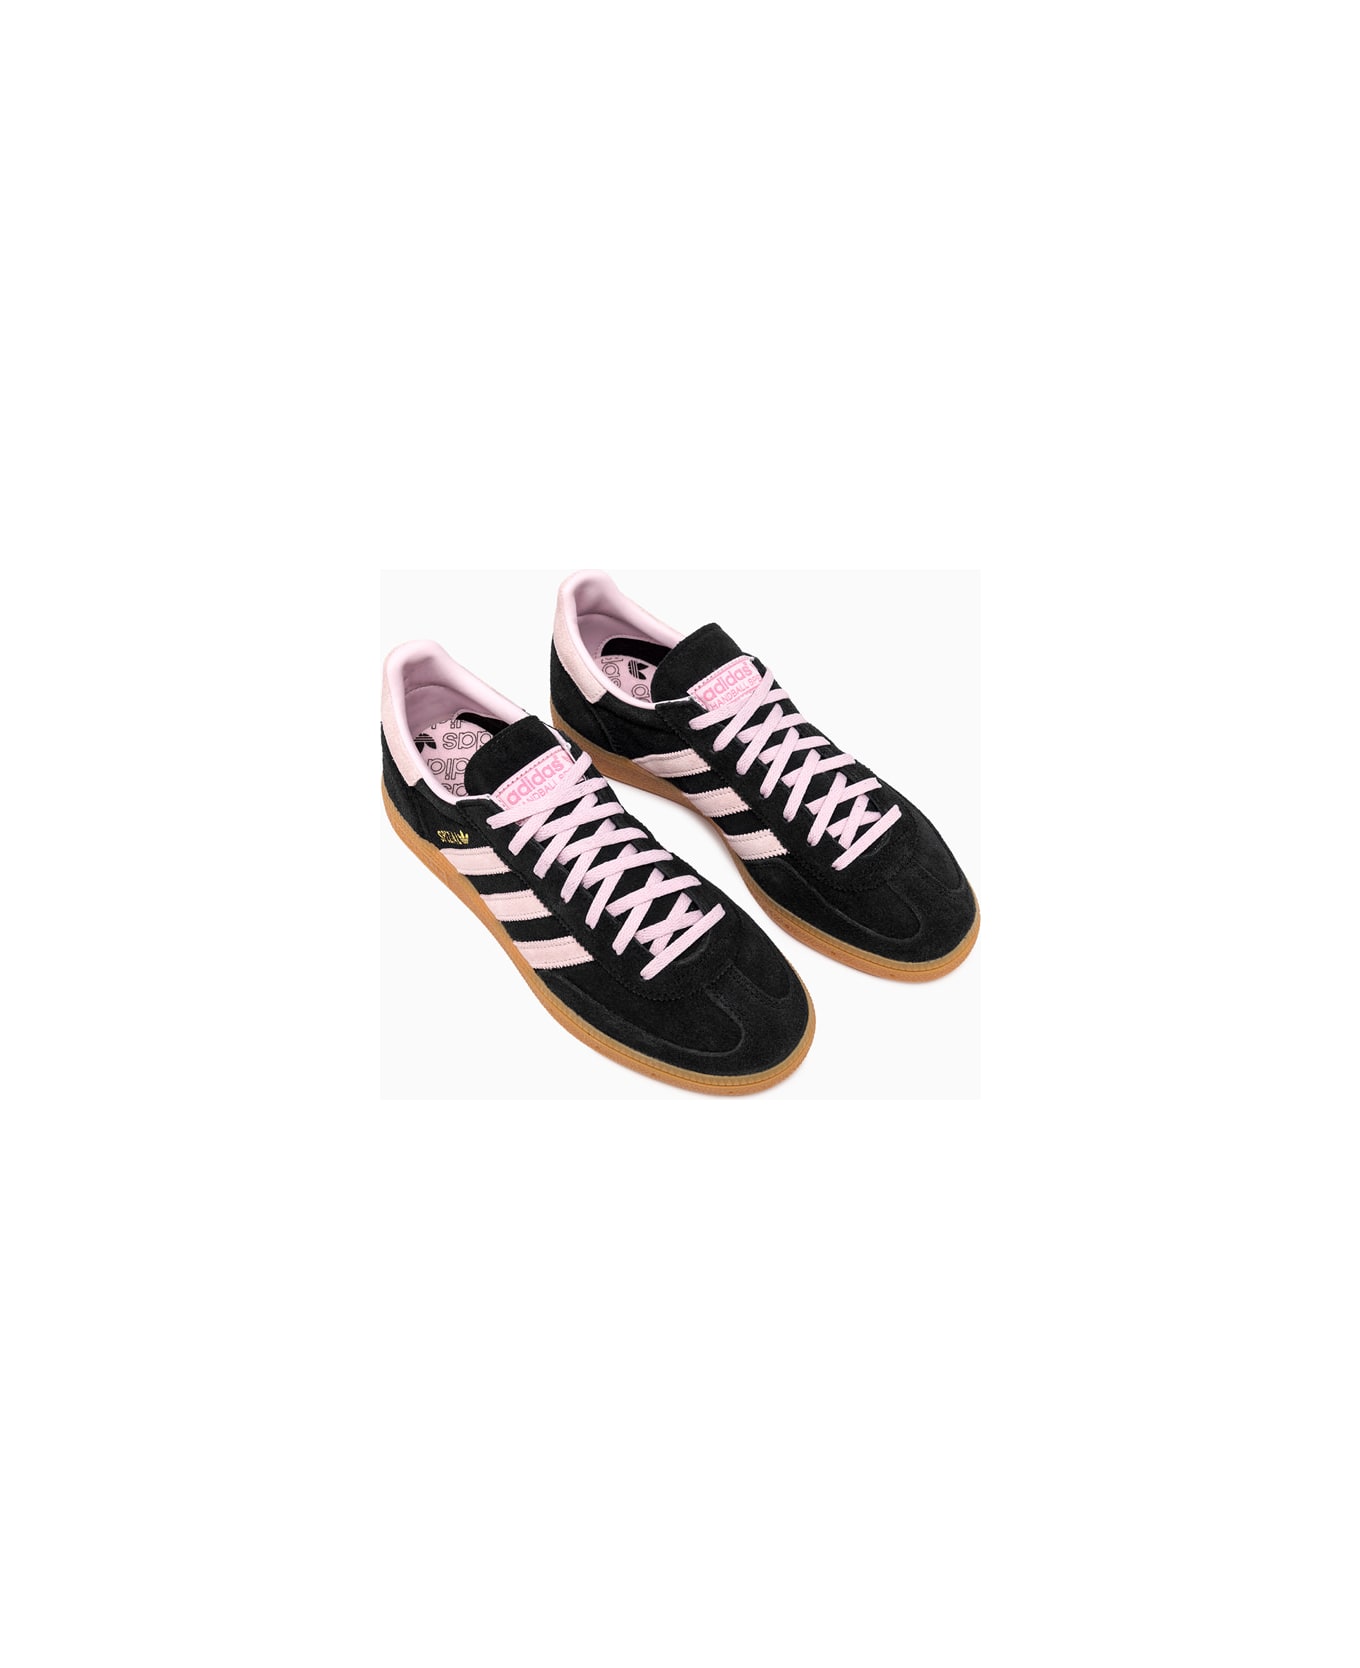 Adidas Originals Handball Spezial (w) Sneakers Ie5897